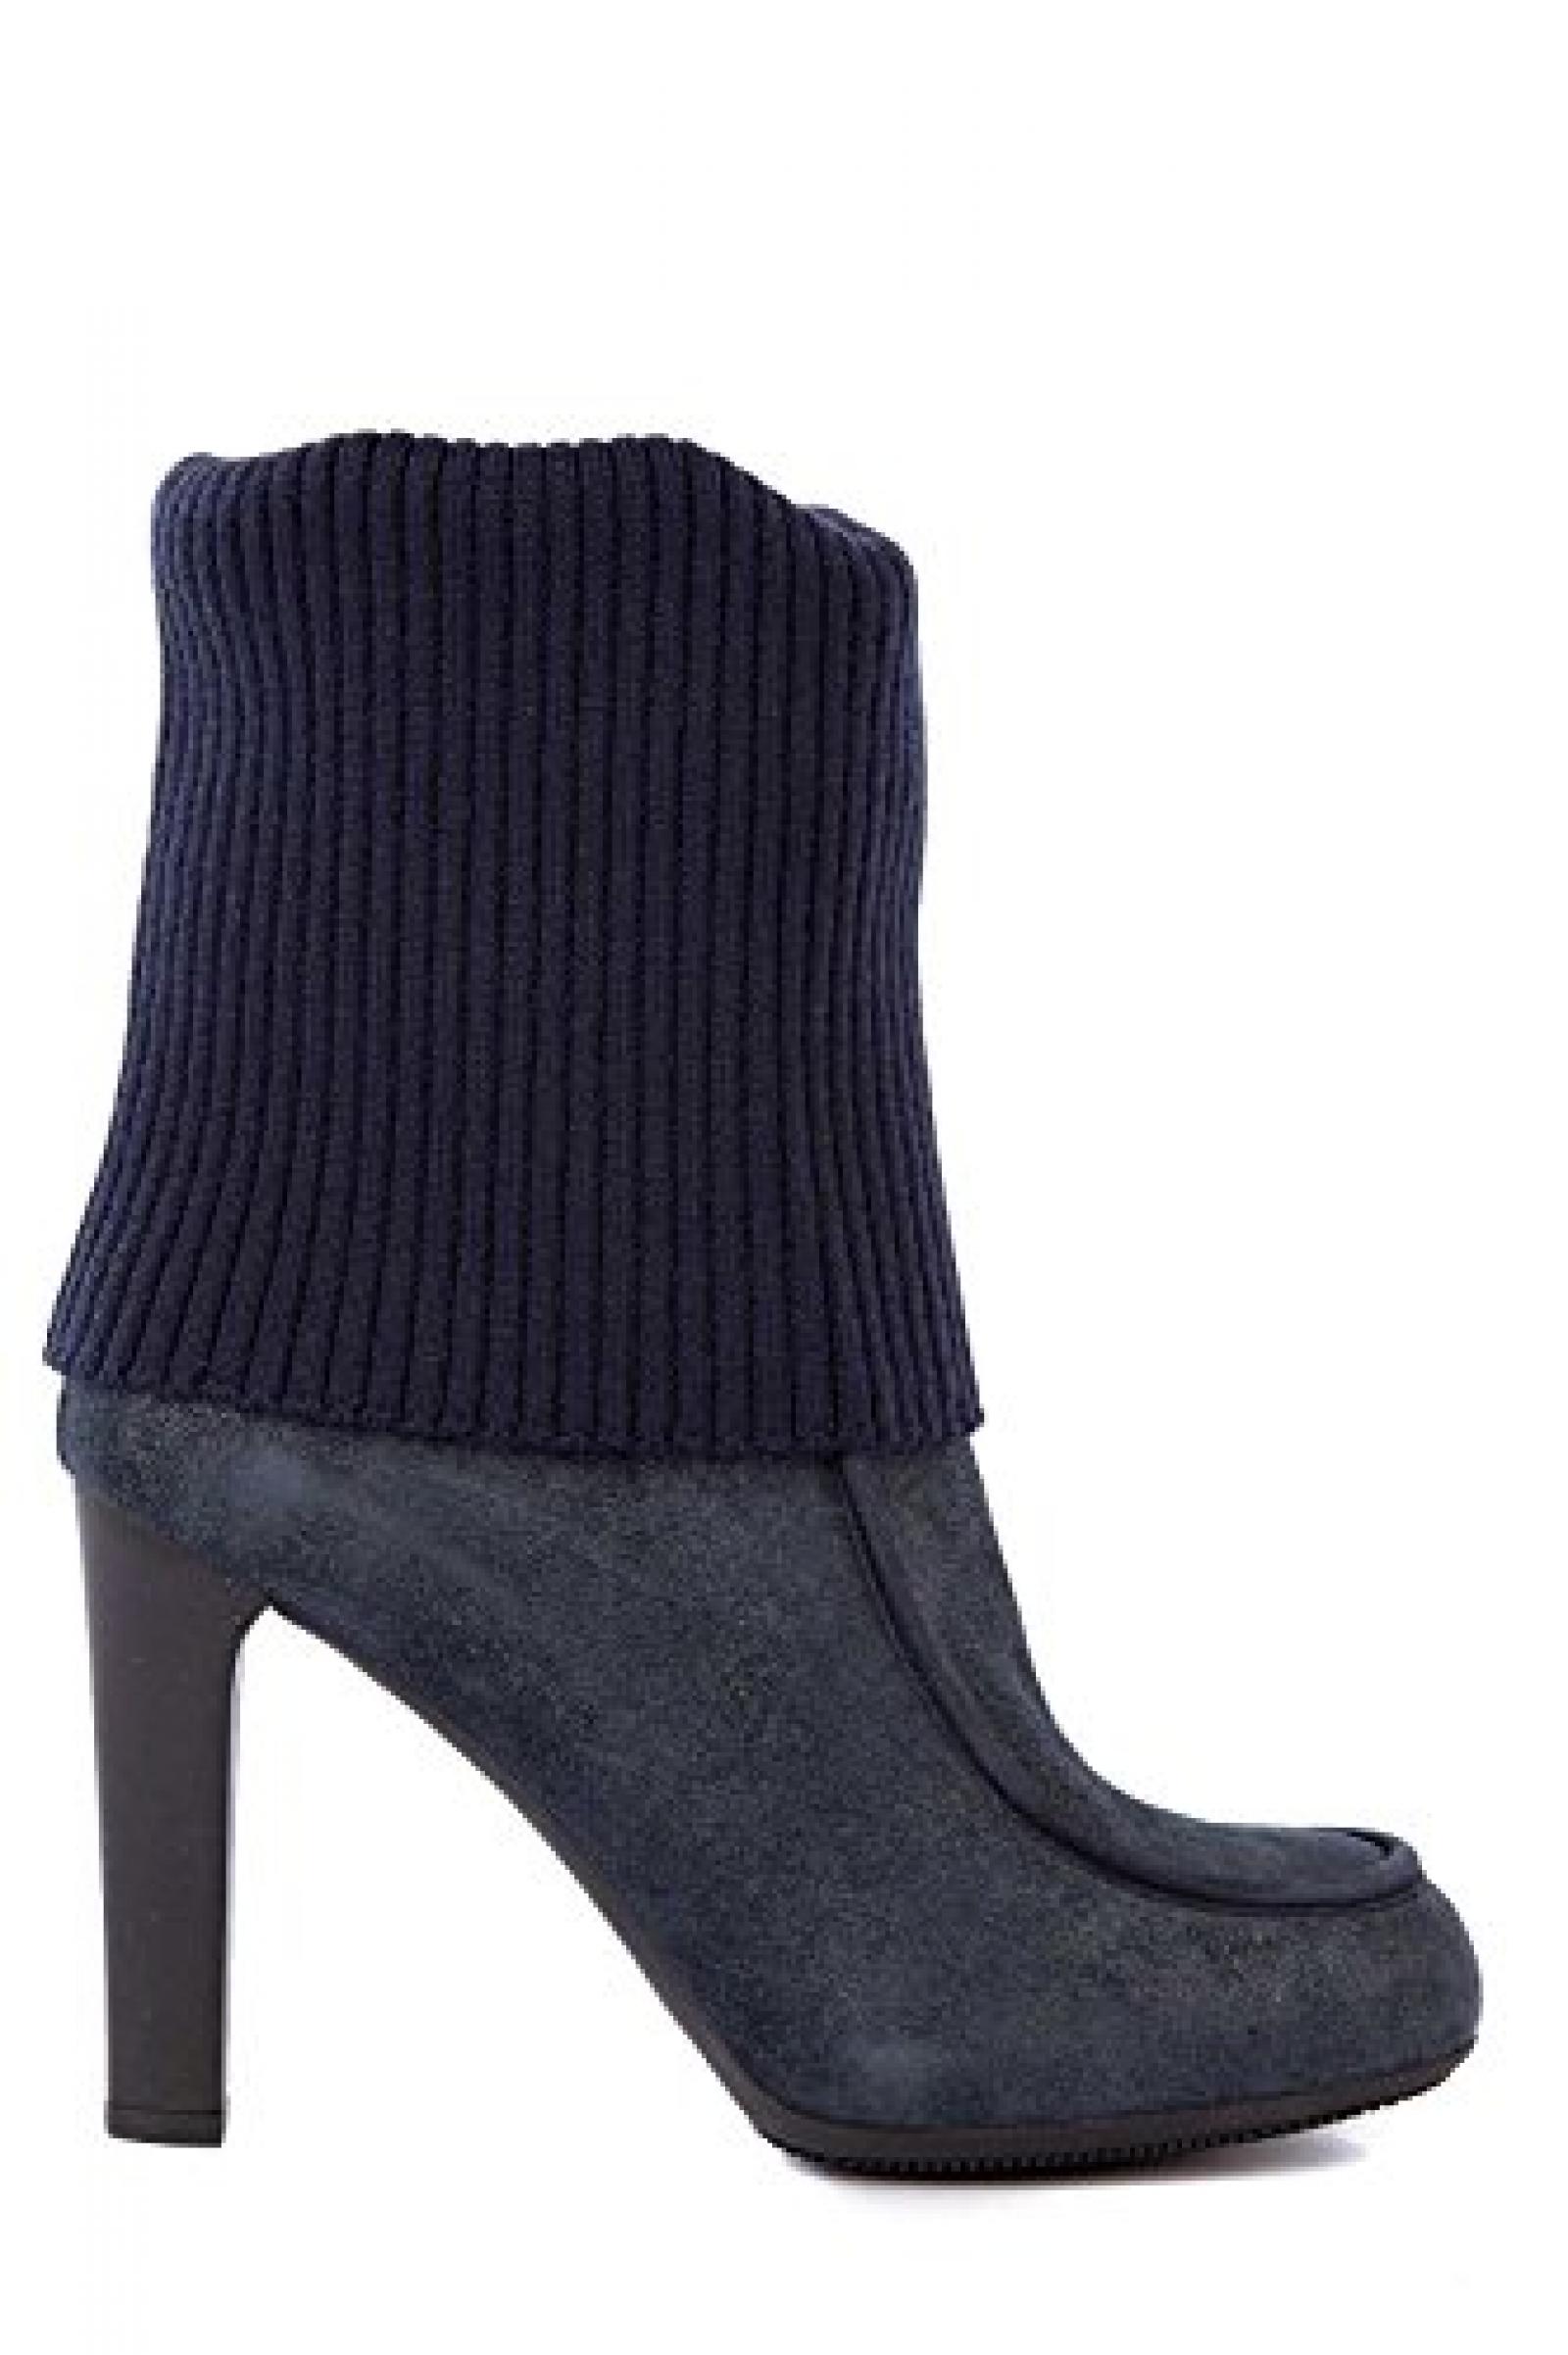 Hogan Damen Leder Stiefeletten Stiefel Ankle Boots mit Absatz blu 